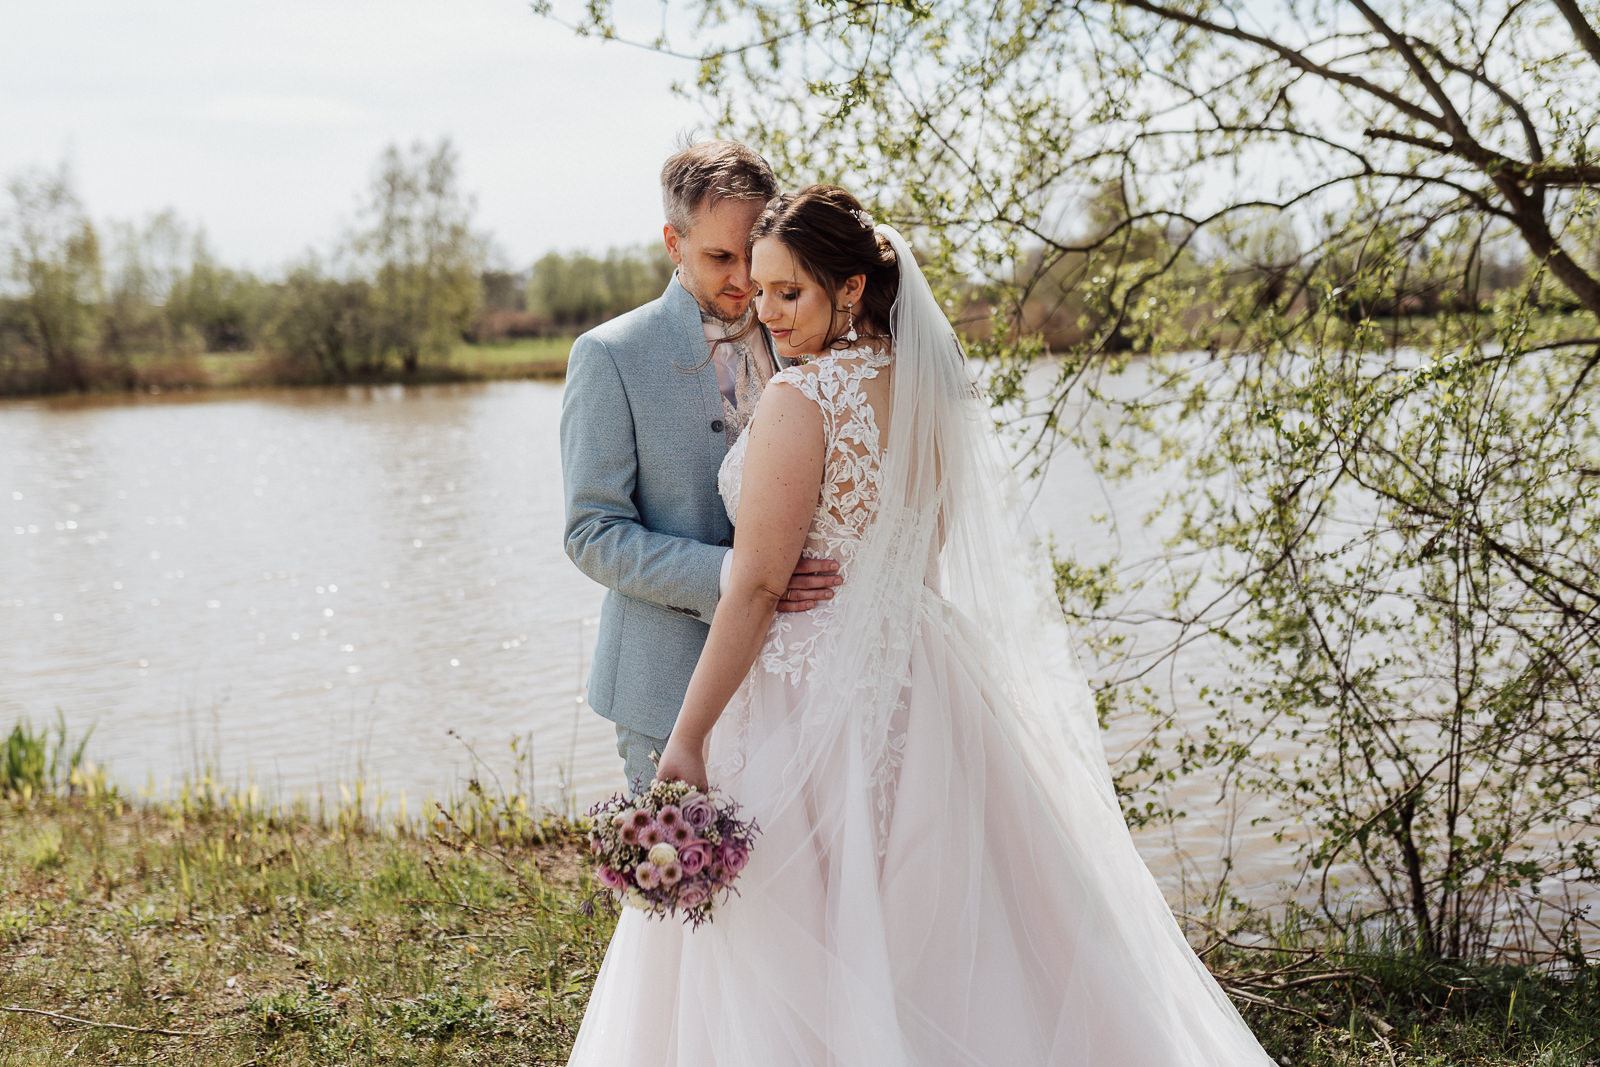 Hochzeitsfoto von einem Brautpaar vor einem See, beiden stehen voreinander und lehnen die Köpfe aneinander.
